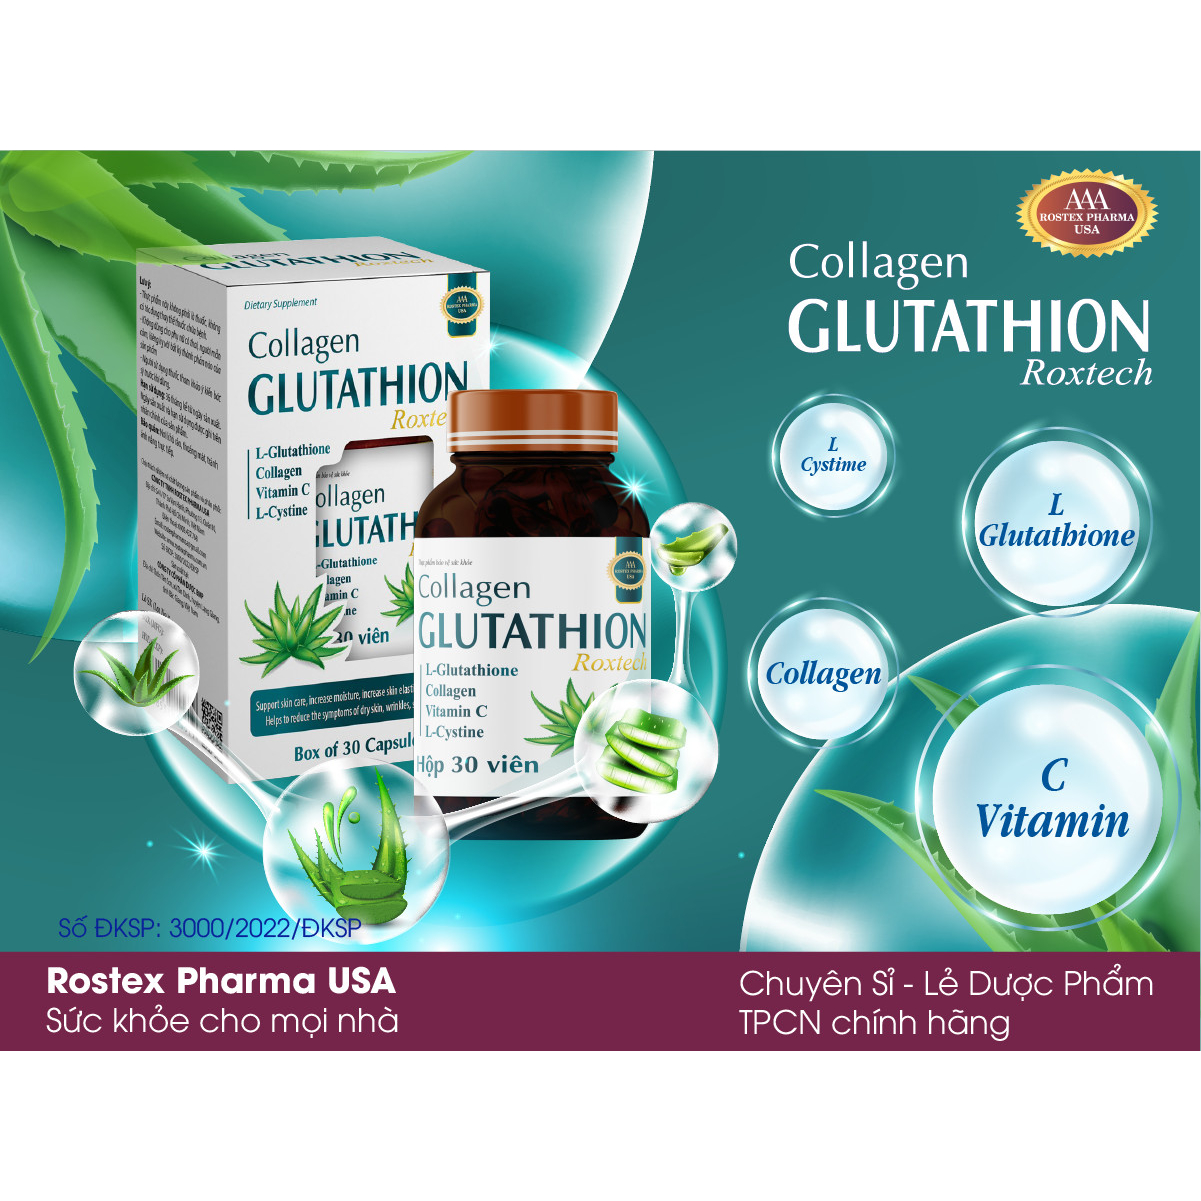 Viên uống Collagen Glutathion ROXTECH giúp làm sáng da, chống lão hóa da